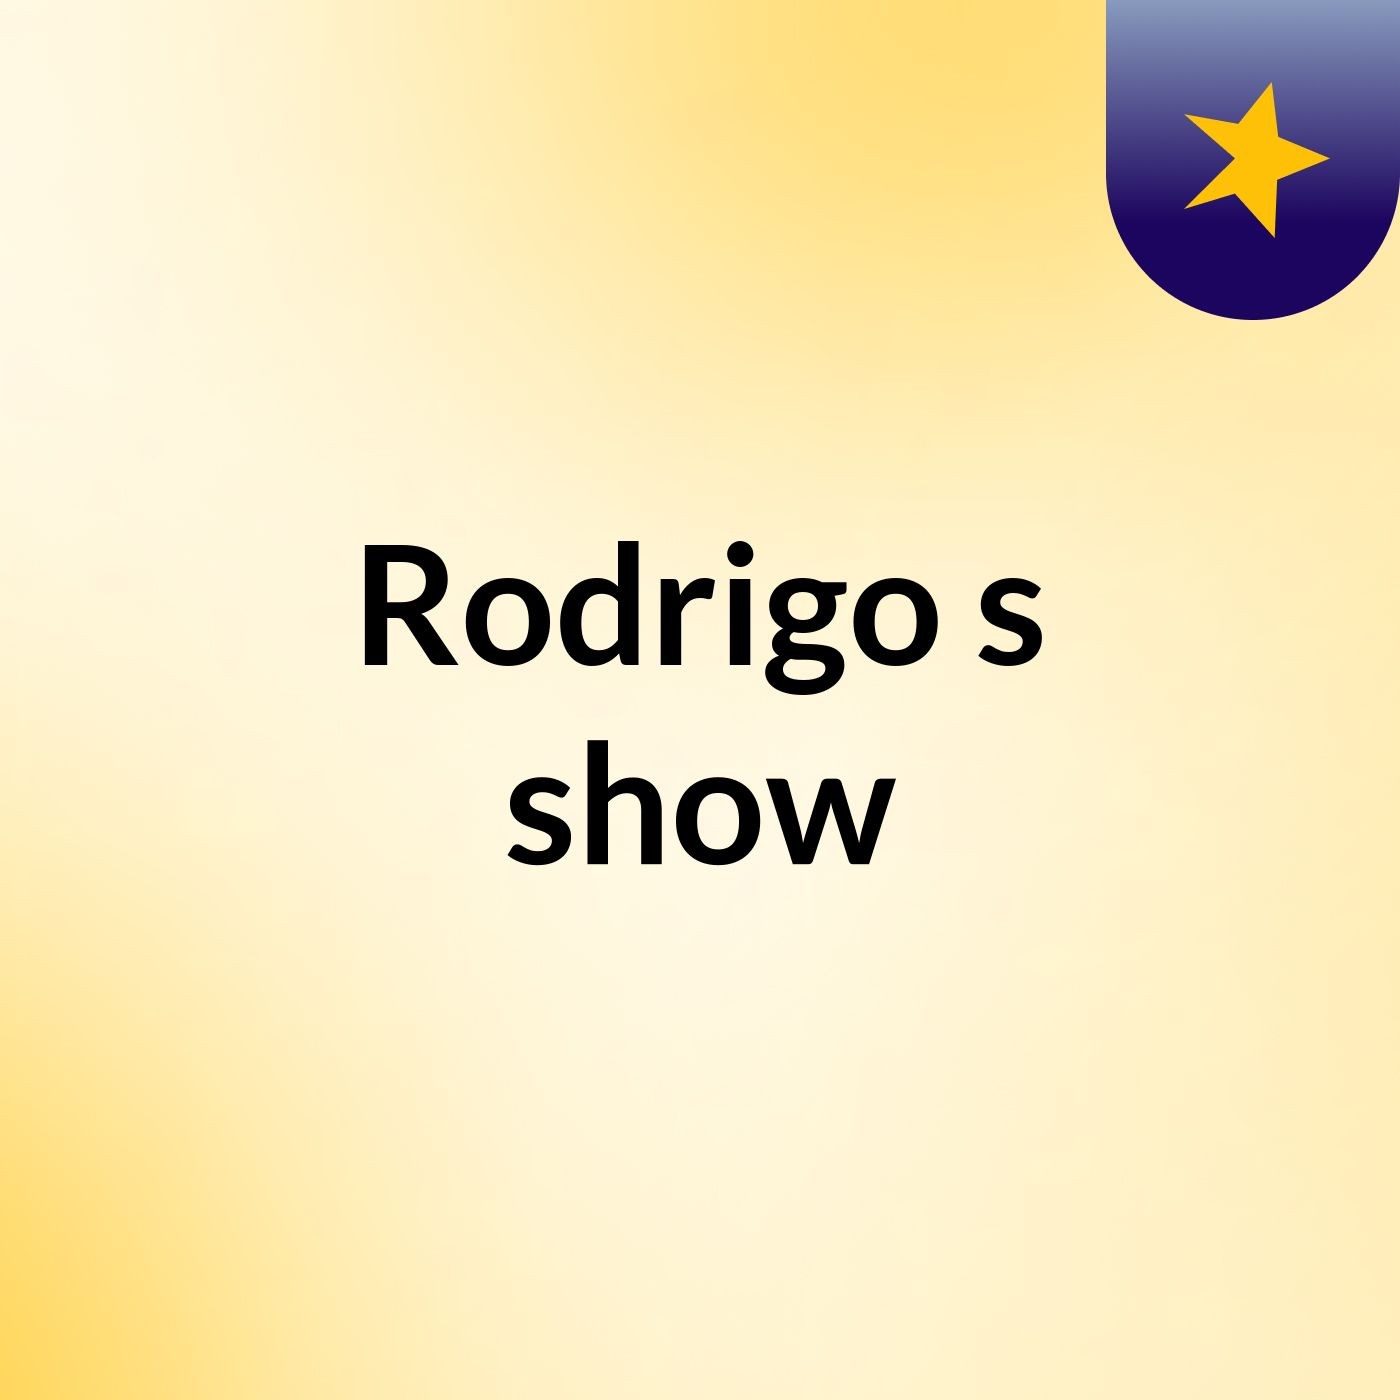 Rodrigo's show